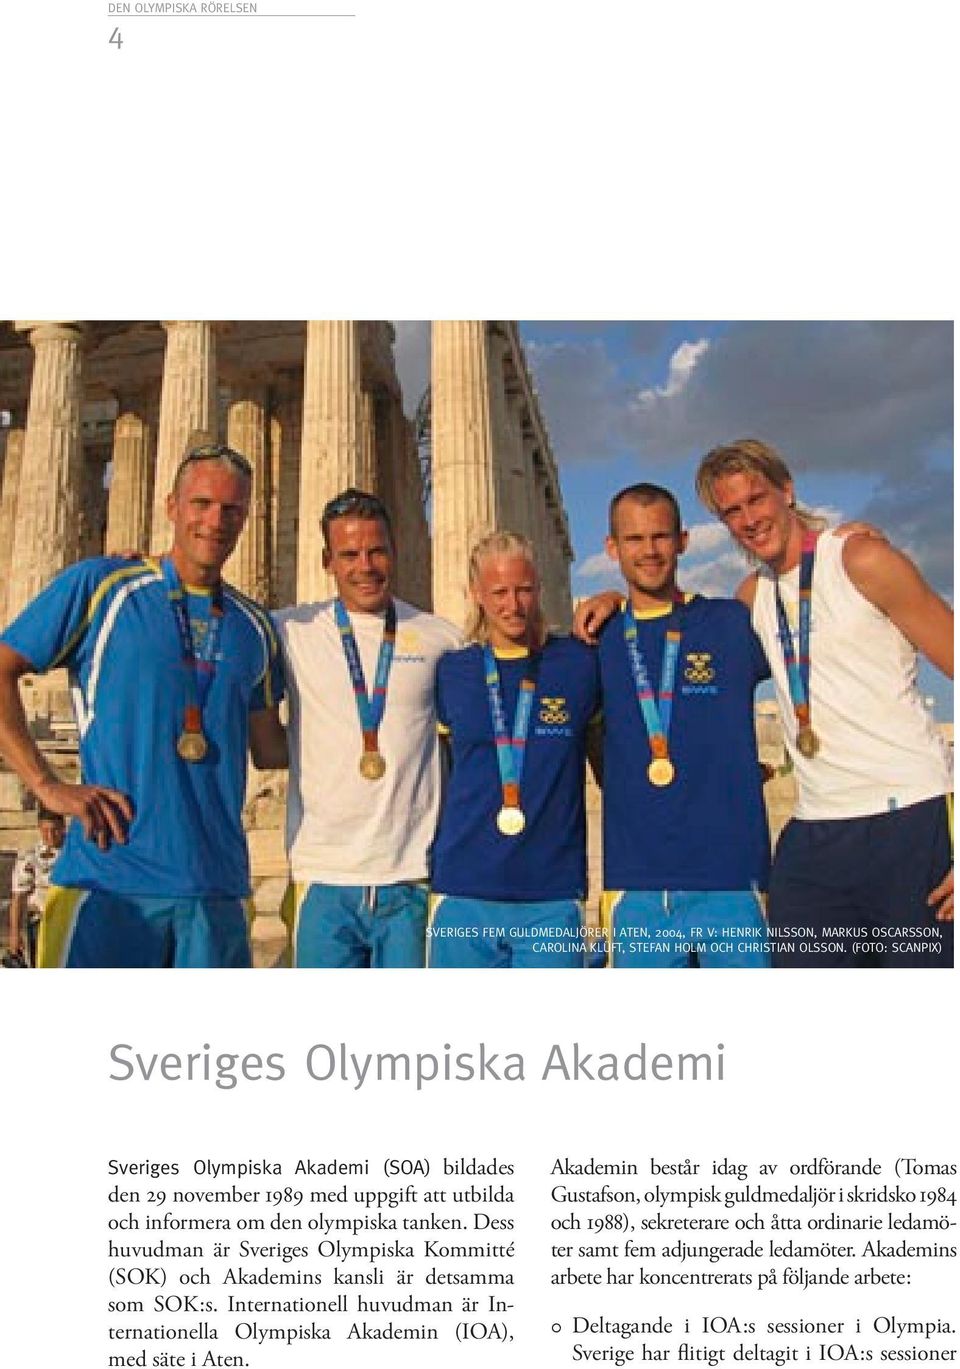 Dess huvudman är Sveriges Olympiska Kommitté (SOK) och Akademins kansli är detsamma som SOK:s. Internationell huvudman är Internationella Olympiska Akademin (IOA), med säte i Aten.